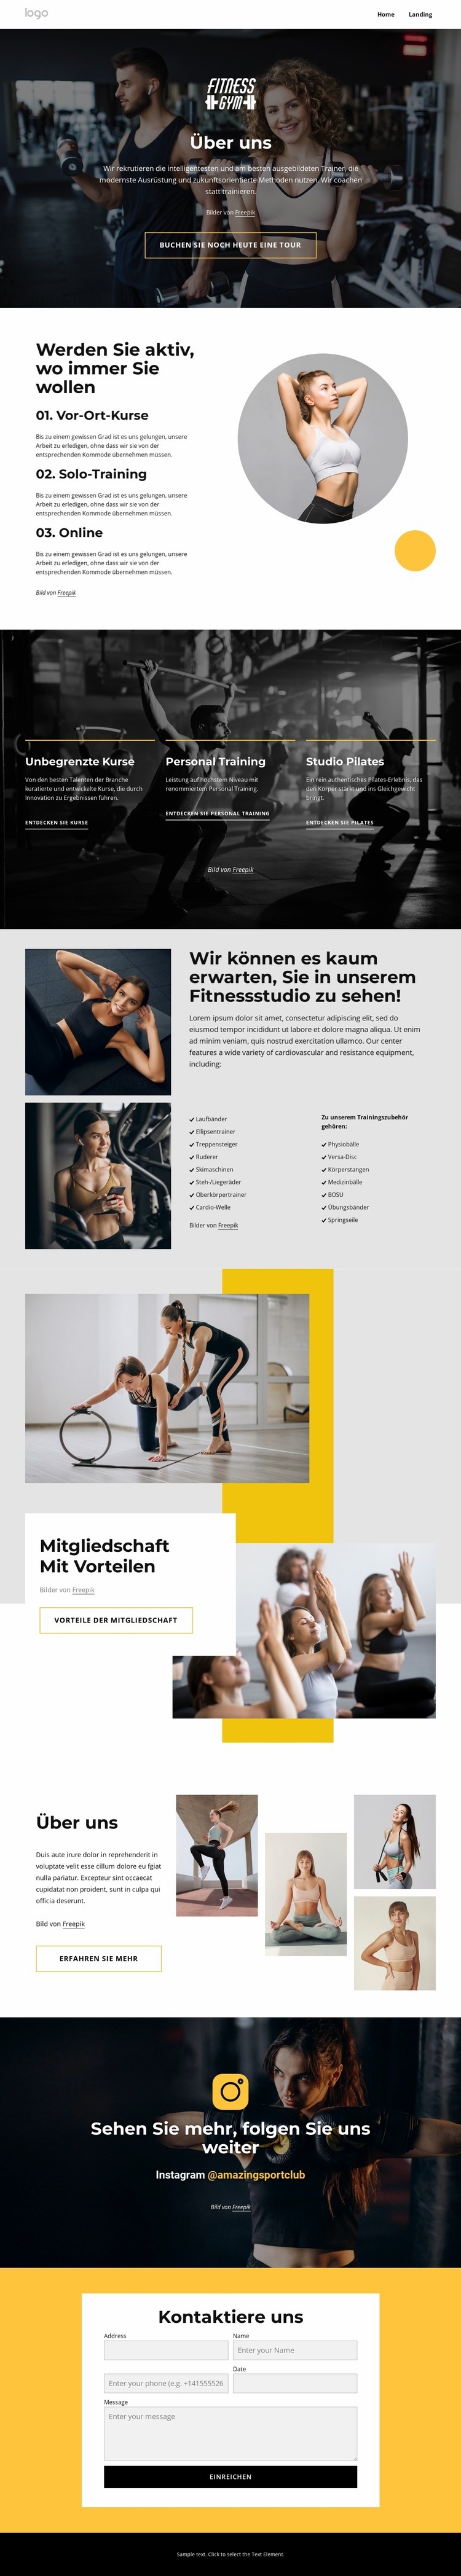 Sport- und Wellnesscenter Website-Modell